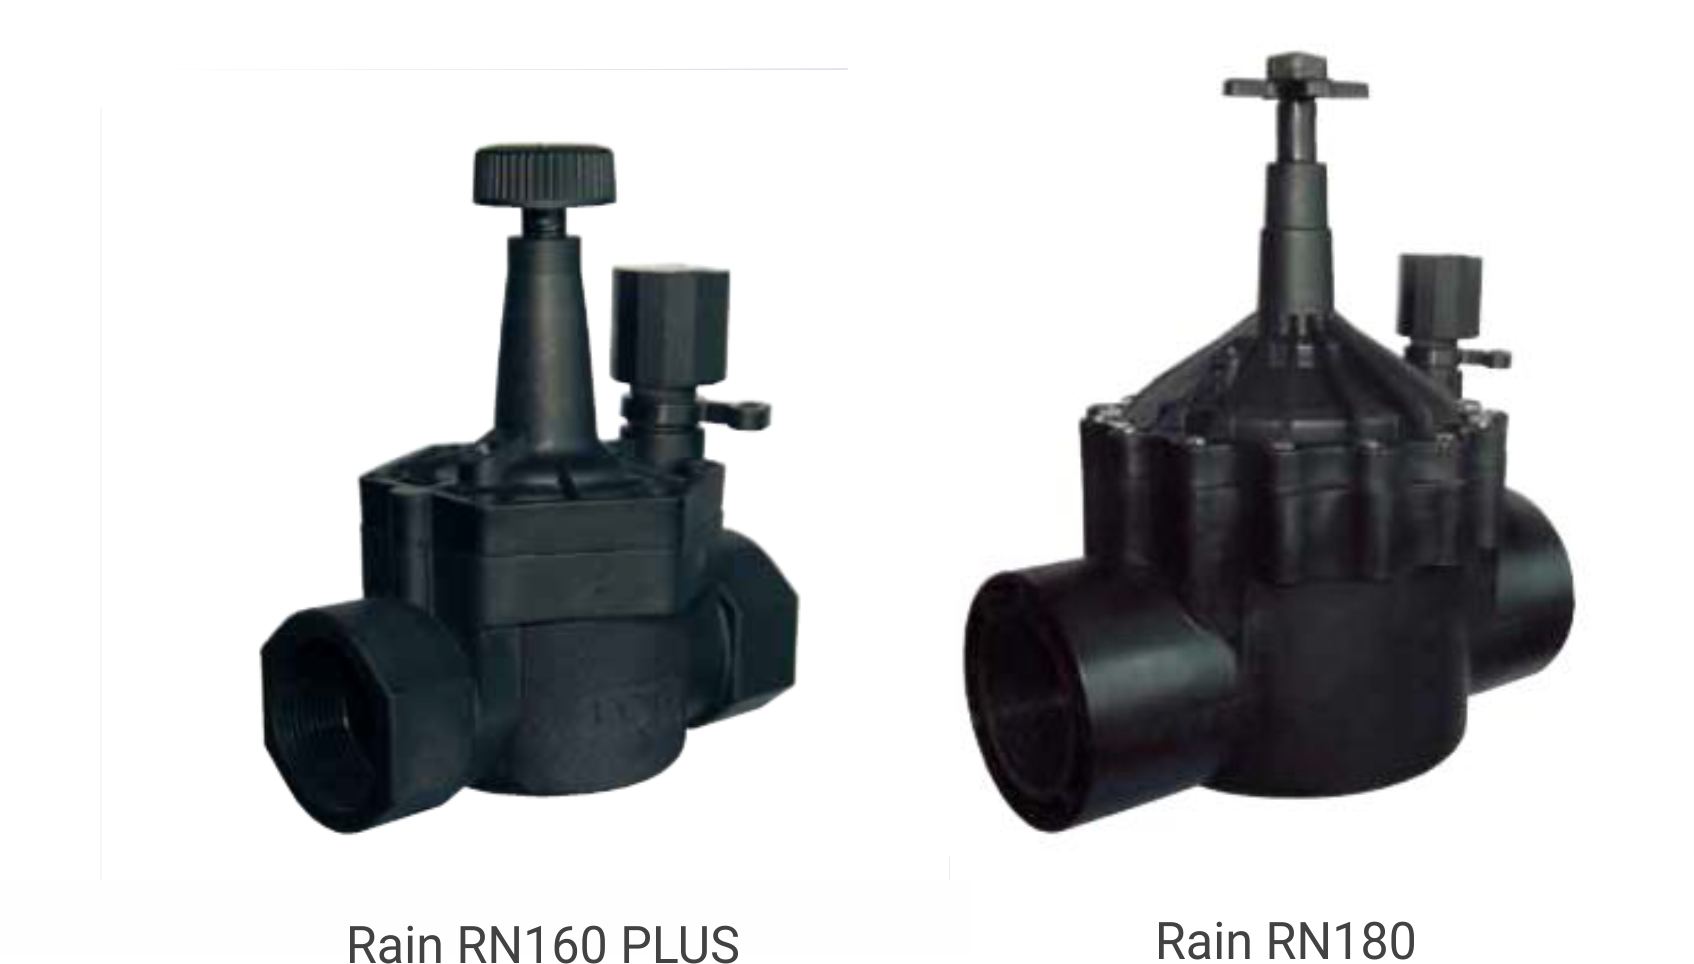 Rn160 Plus & Rn180 Valves Land & Turf Irrigation AutomatIrrigation